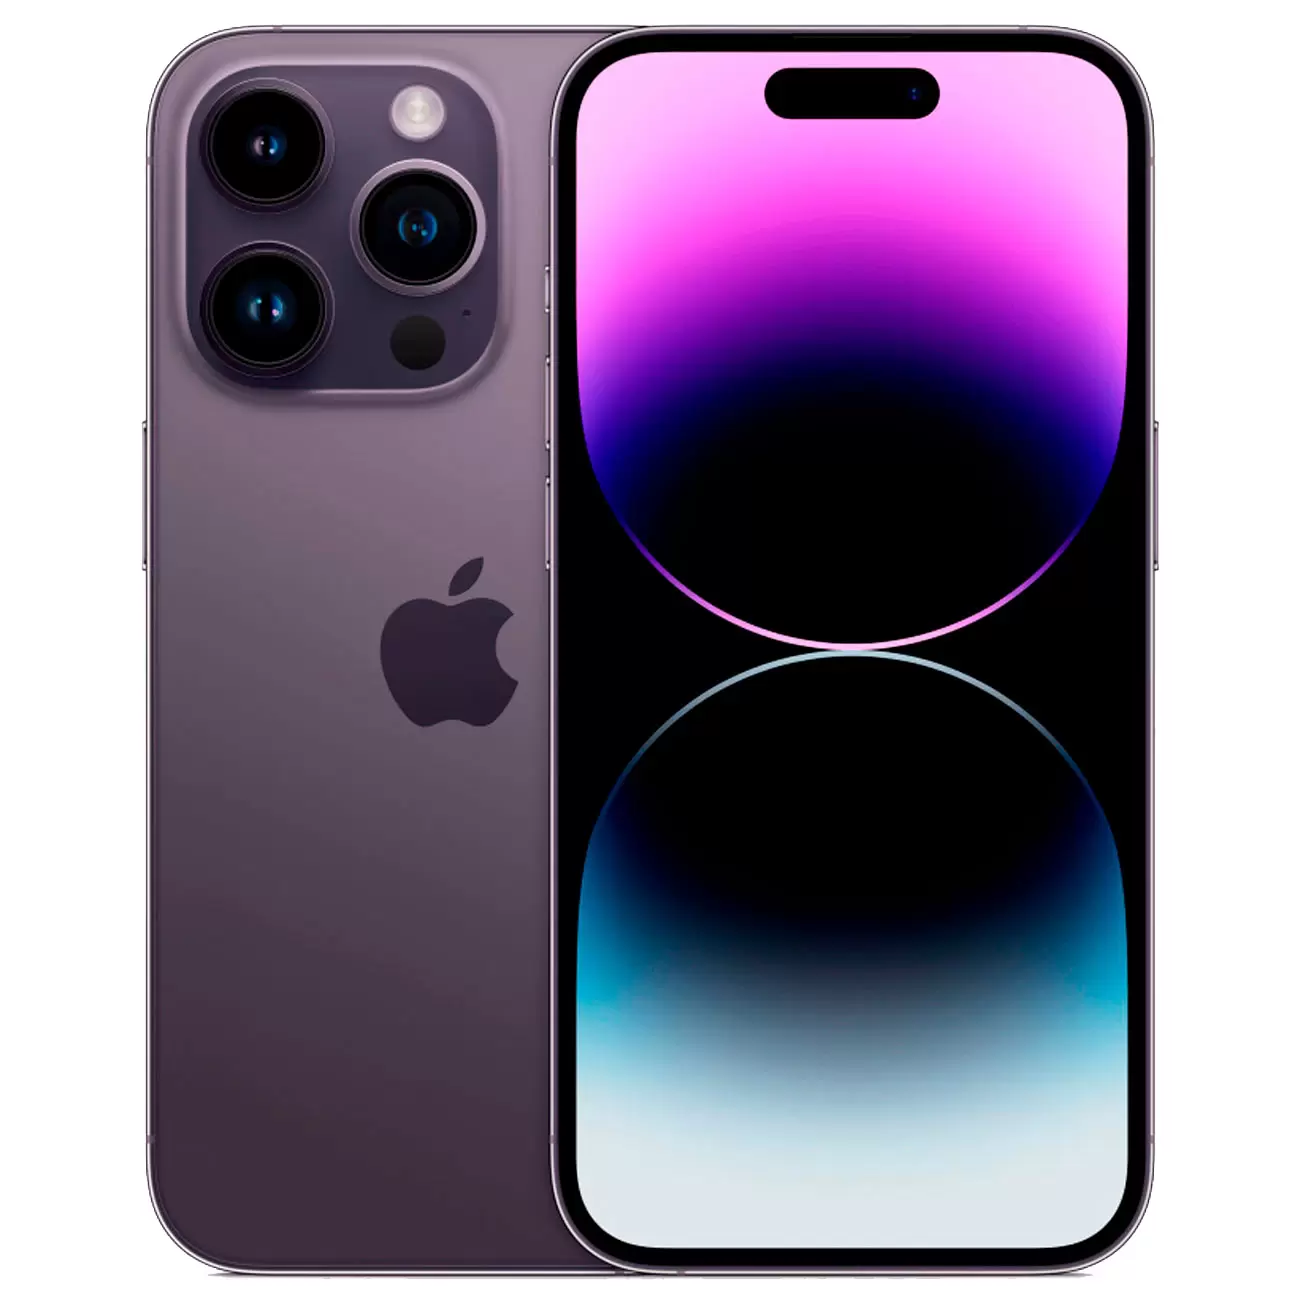 Купить Смартфон Apple iPhone 14 Pro 128GB Deep Purple 104 990 руб. Apple  iPhone 14 Pro в официальном магазине Apple, Samsung, Xiaomi. iPixel.ru  смартфон apple iphone 14 pro 128gb deep purple в